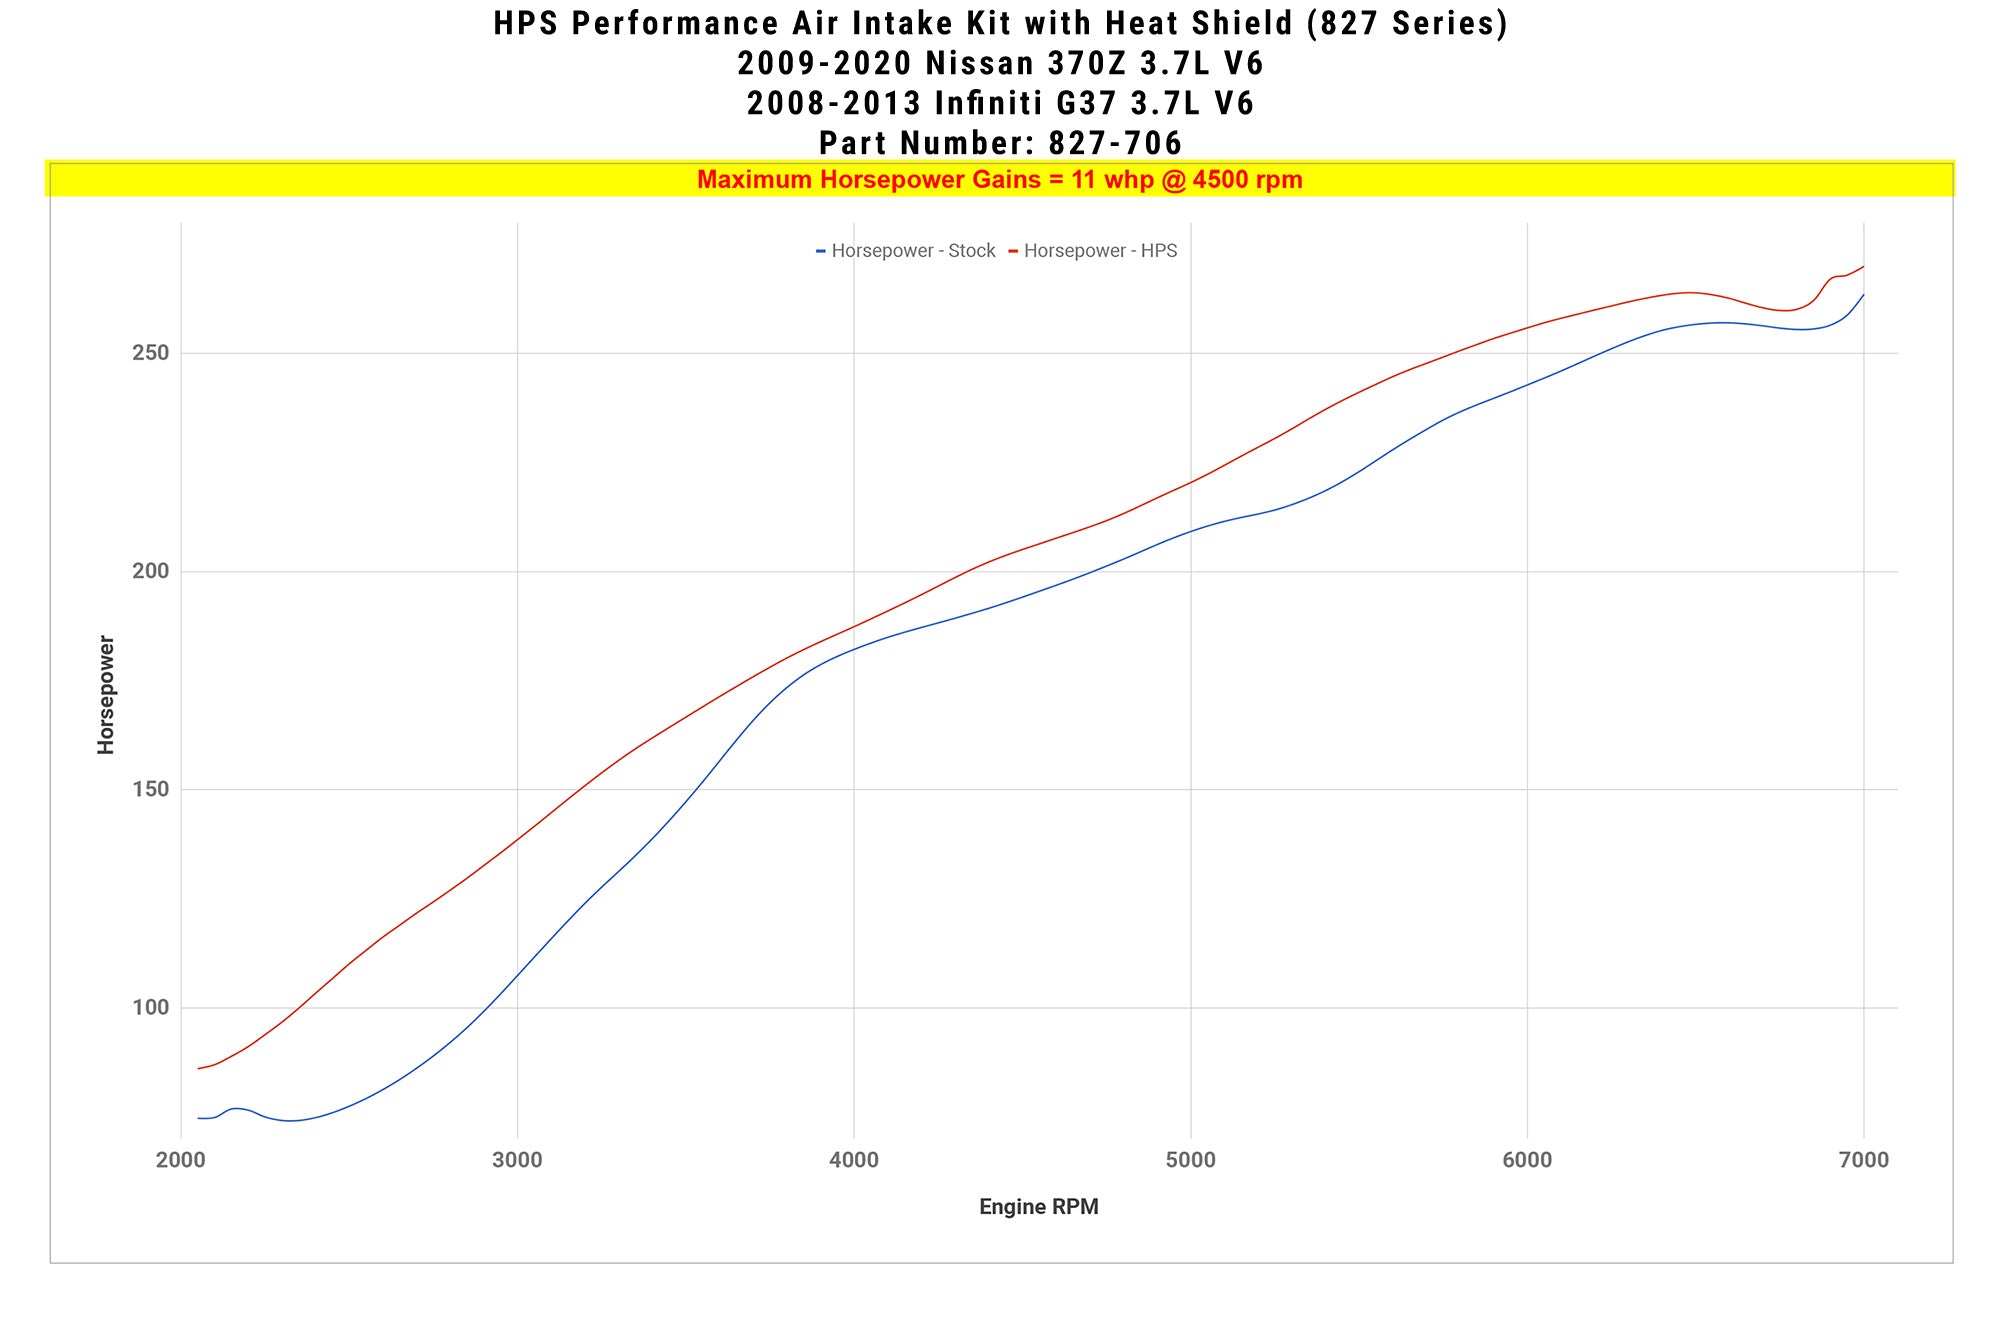 HPS Shortram Air Intake Kit 827-706 increase horsepower +11 whp on Infiniti 2008-2013 G37 3.7L V6